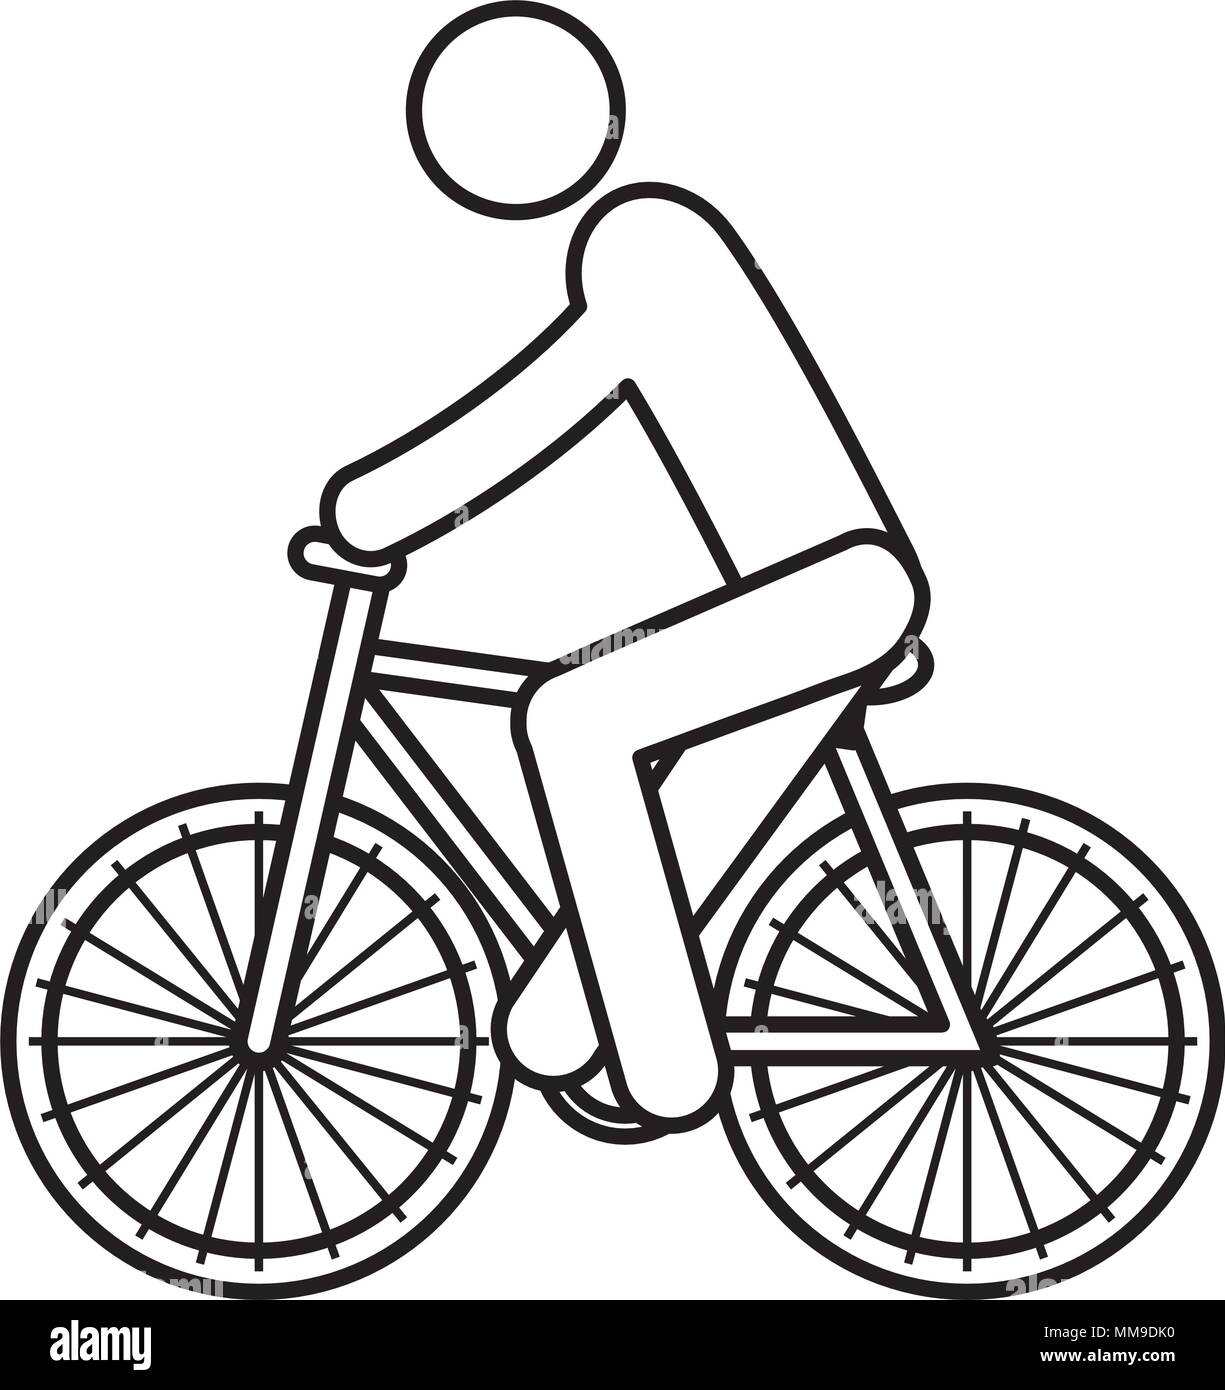 bicycle vehicle with human figure Stock Vector Image & Art - Alamy